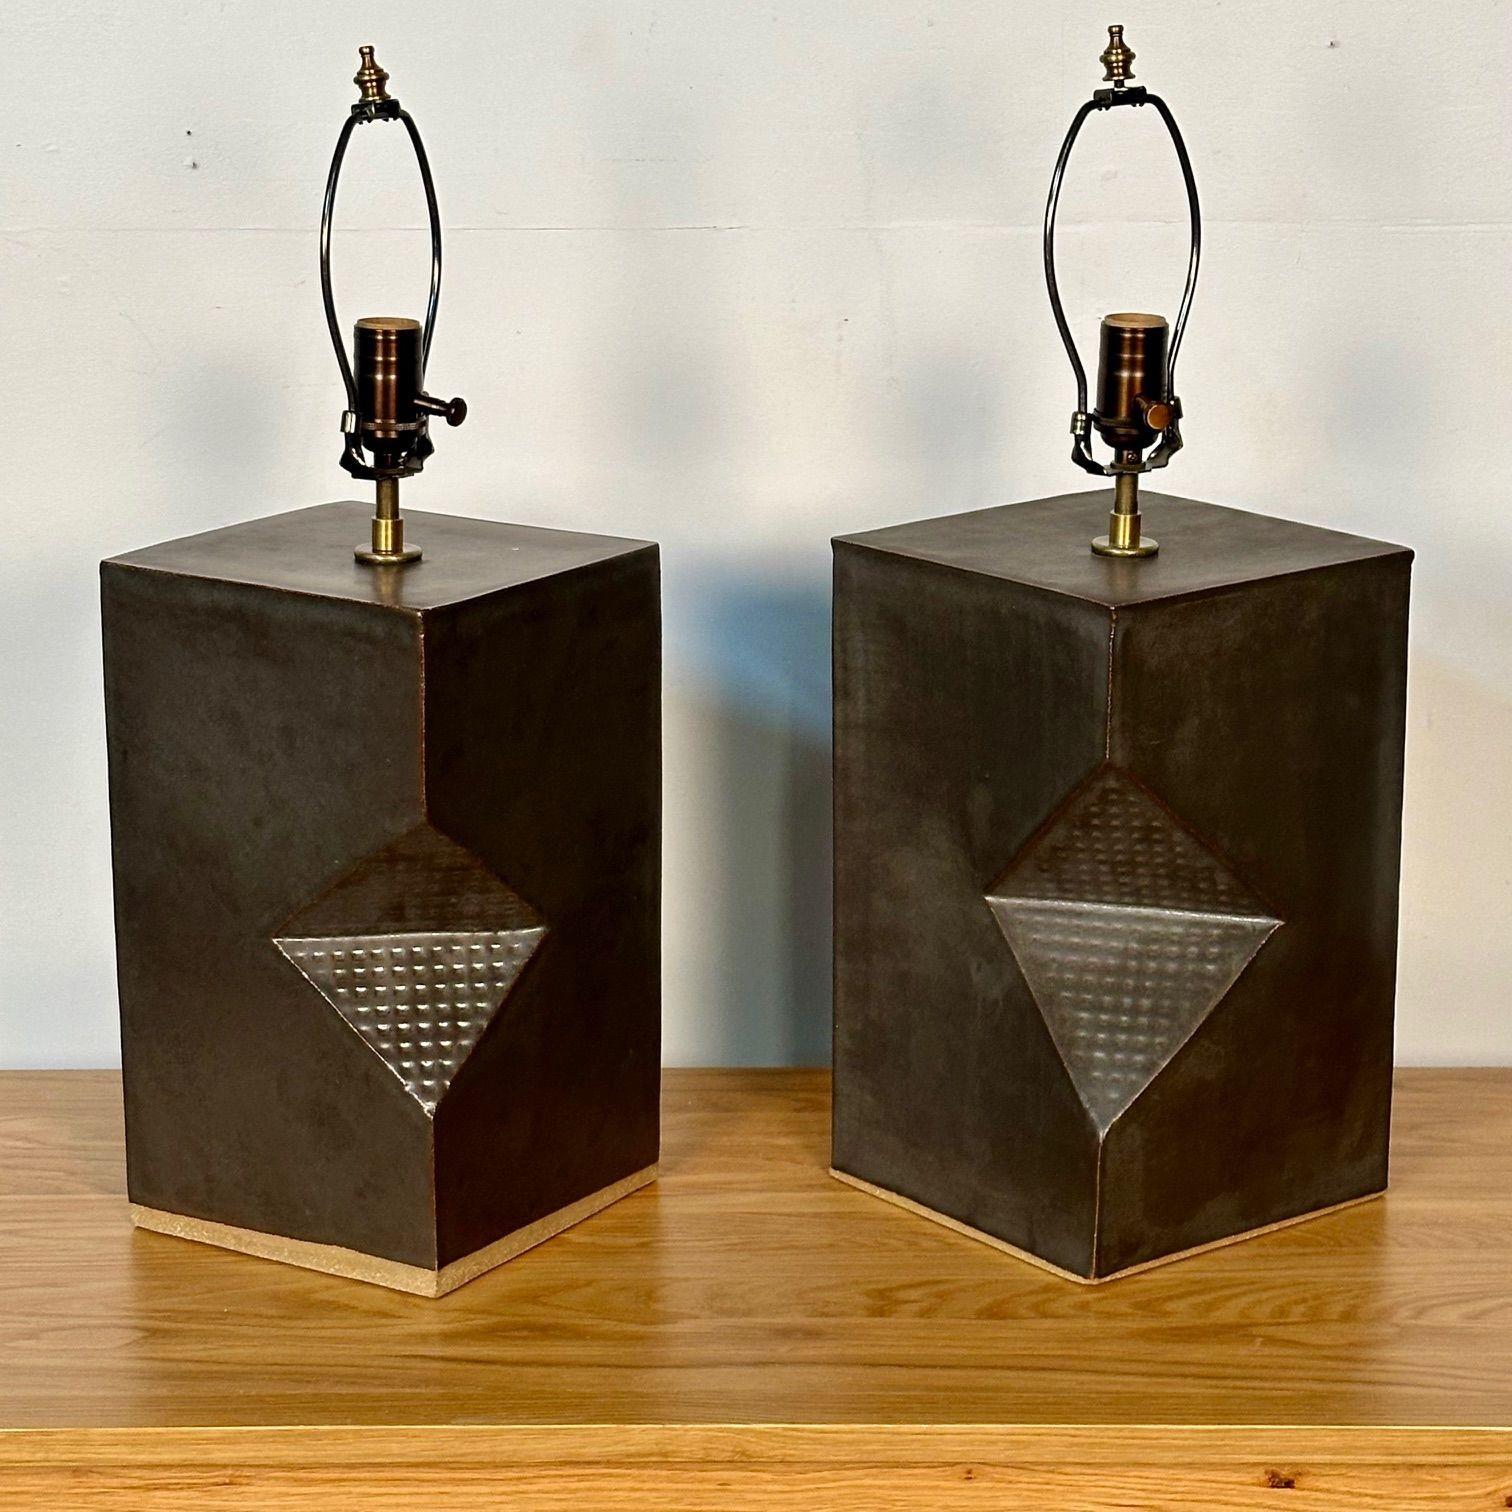 Dumais Made, Contemporary, Ceramic Table Lamps, Dark Brown Walnut Glaze, 2021 For Sale 6